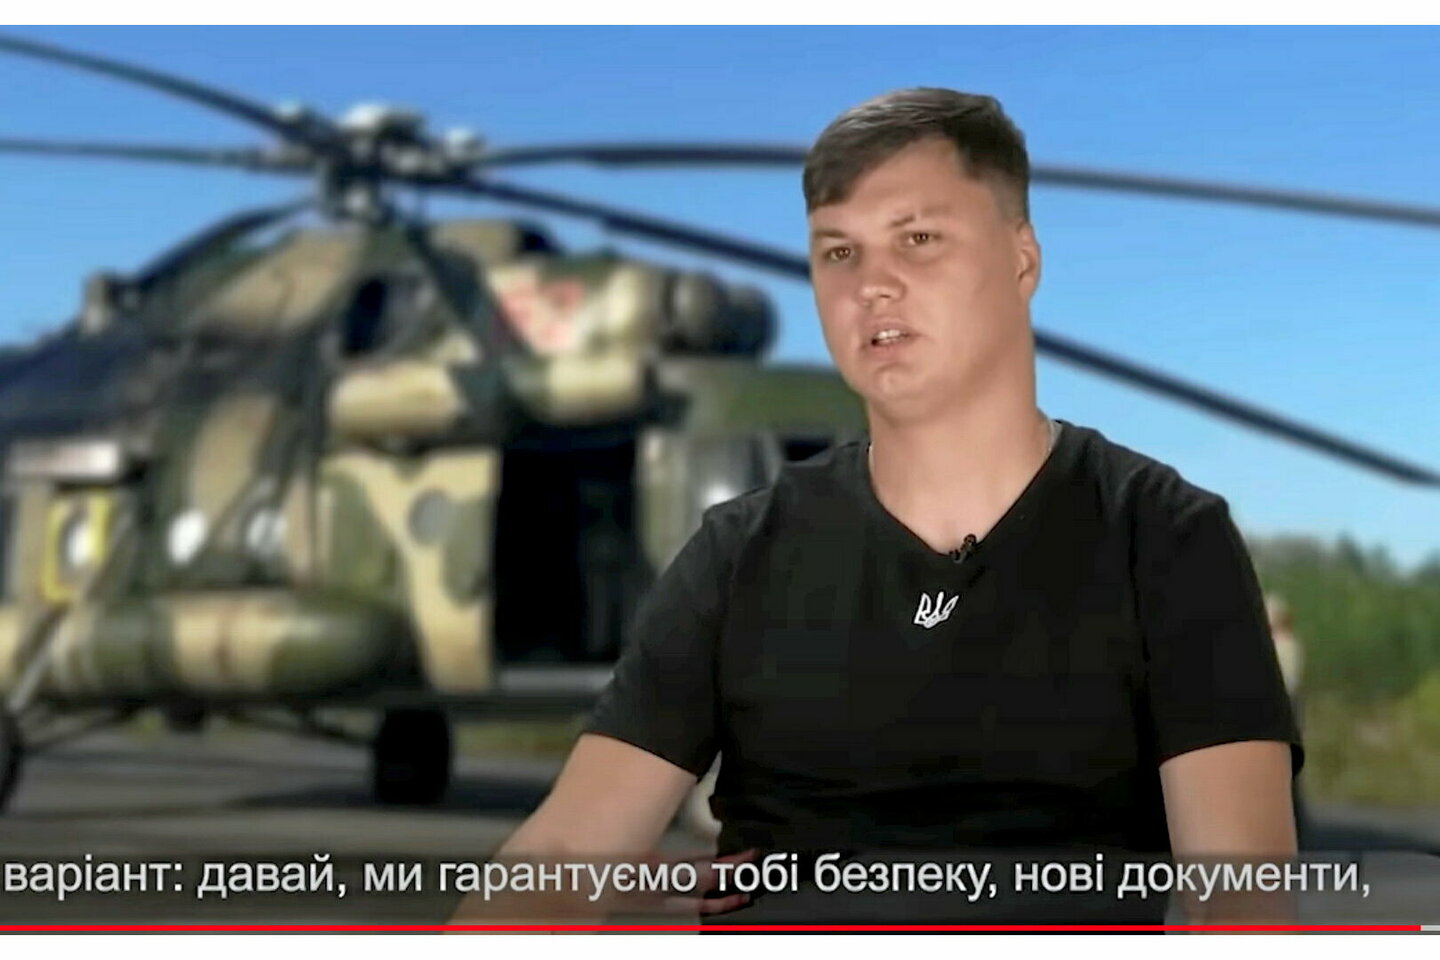 guerre en ukraine : un pilote russe, qui avait déserté l’armée, retrouvé mort en espagne